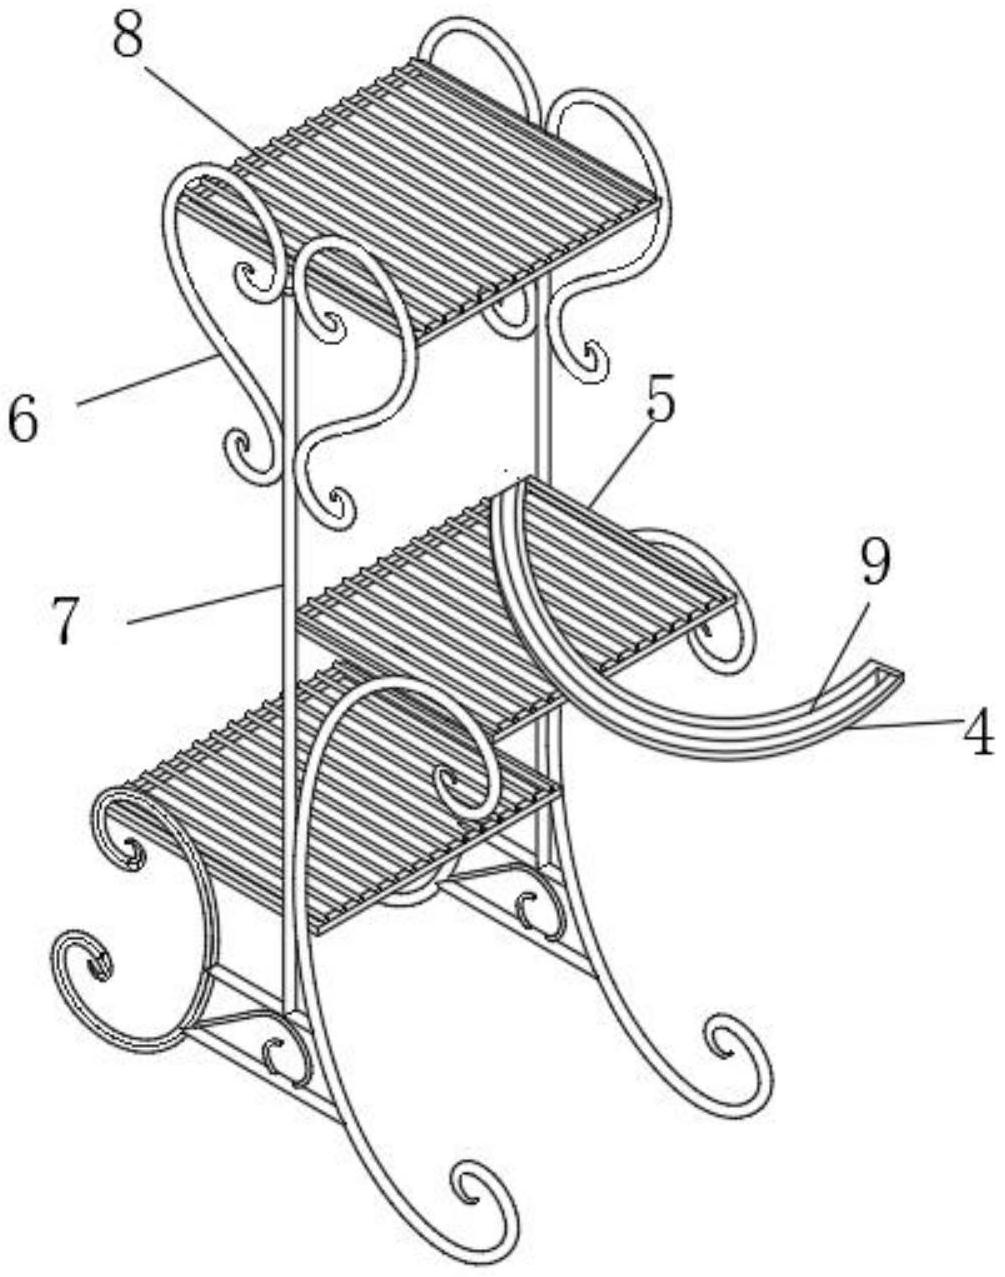 一种藤铁组合花盆放置架专利图